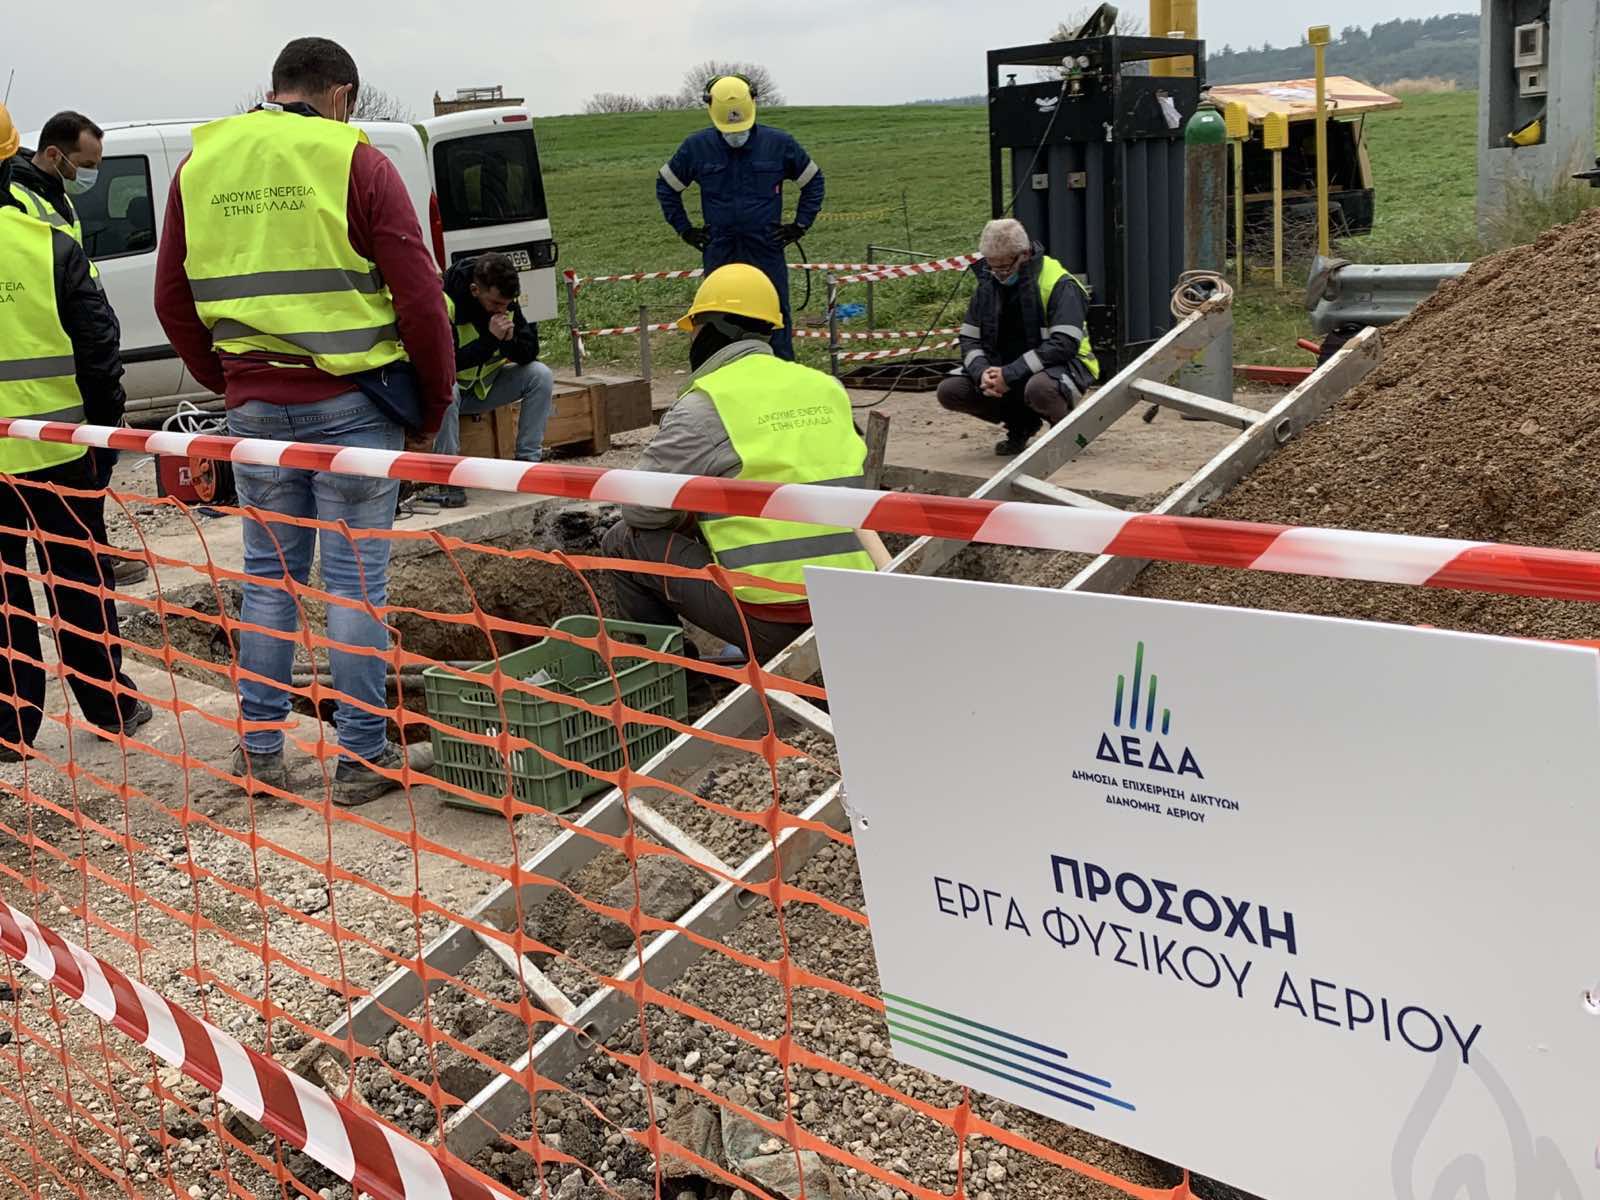 ΔΕΔΑ: Ενημερωτική καμπάνια στην Ανατολική Μακεδονία & Θράκη για τα μεγάλα έργα φυσικού αερίου